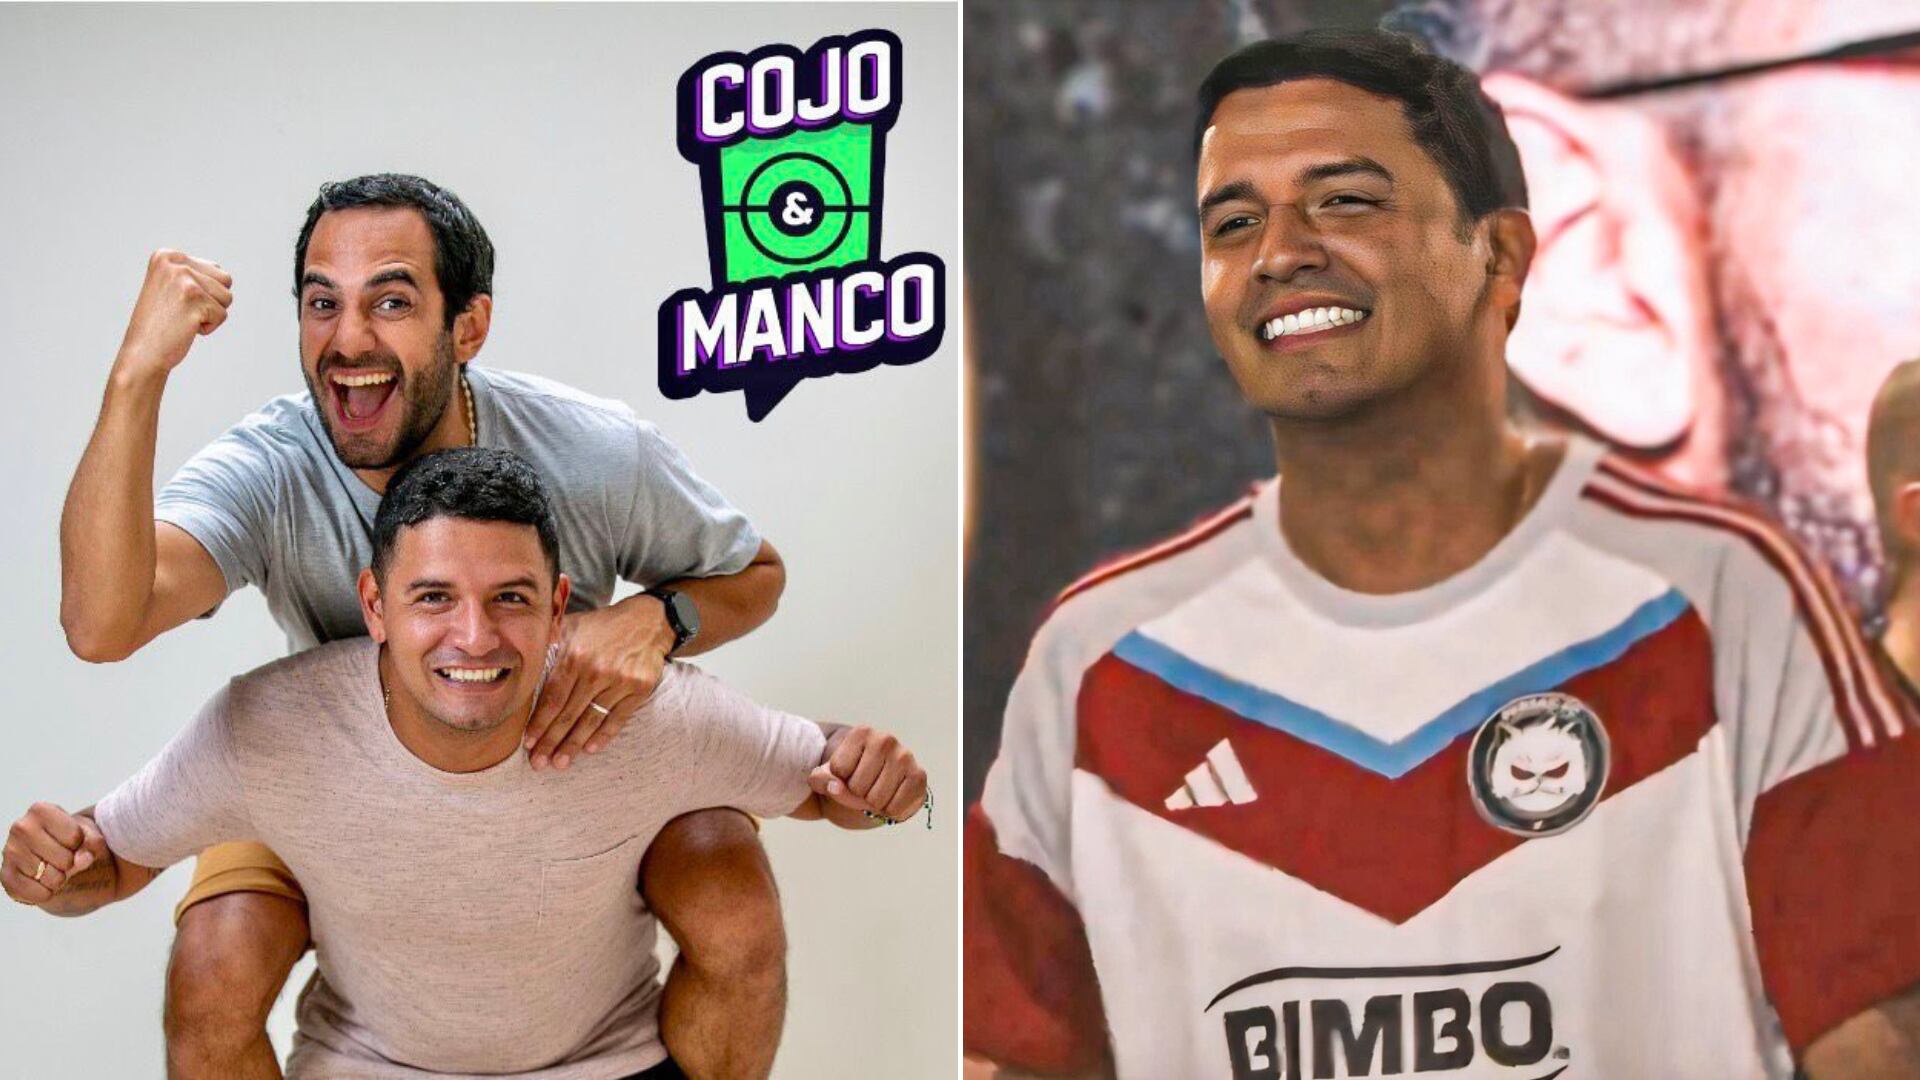 Reimond Manco fue comentarista en 'Cojo y Manco' y participó en la Kings League Américas.